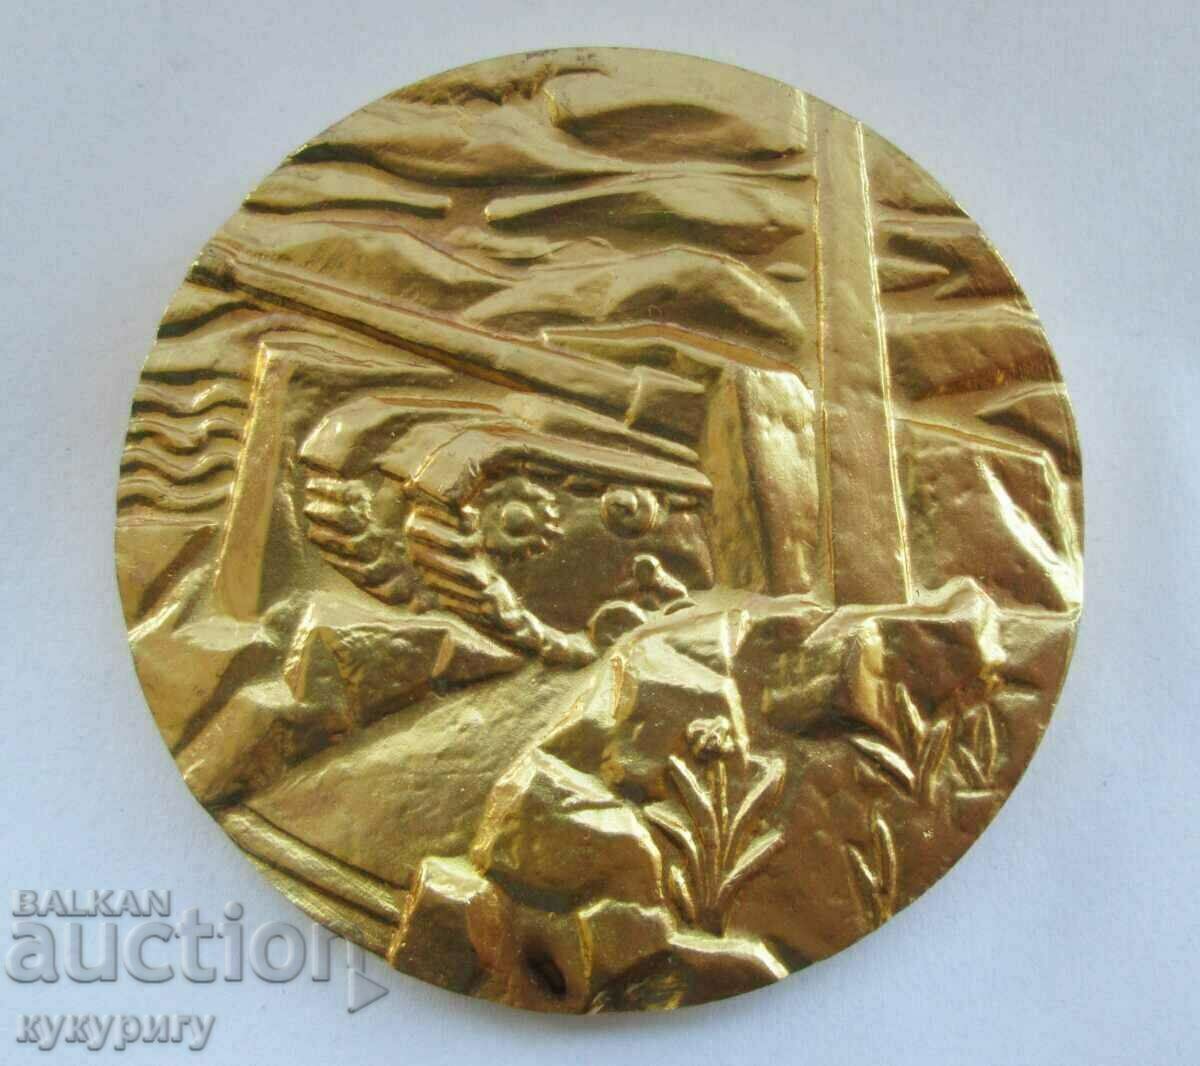 Placă Star Sots medalie insignă 1 Brigada blindată 1944 - 1945